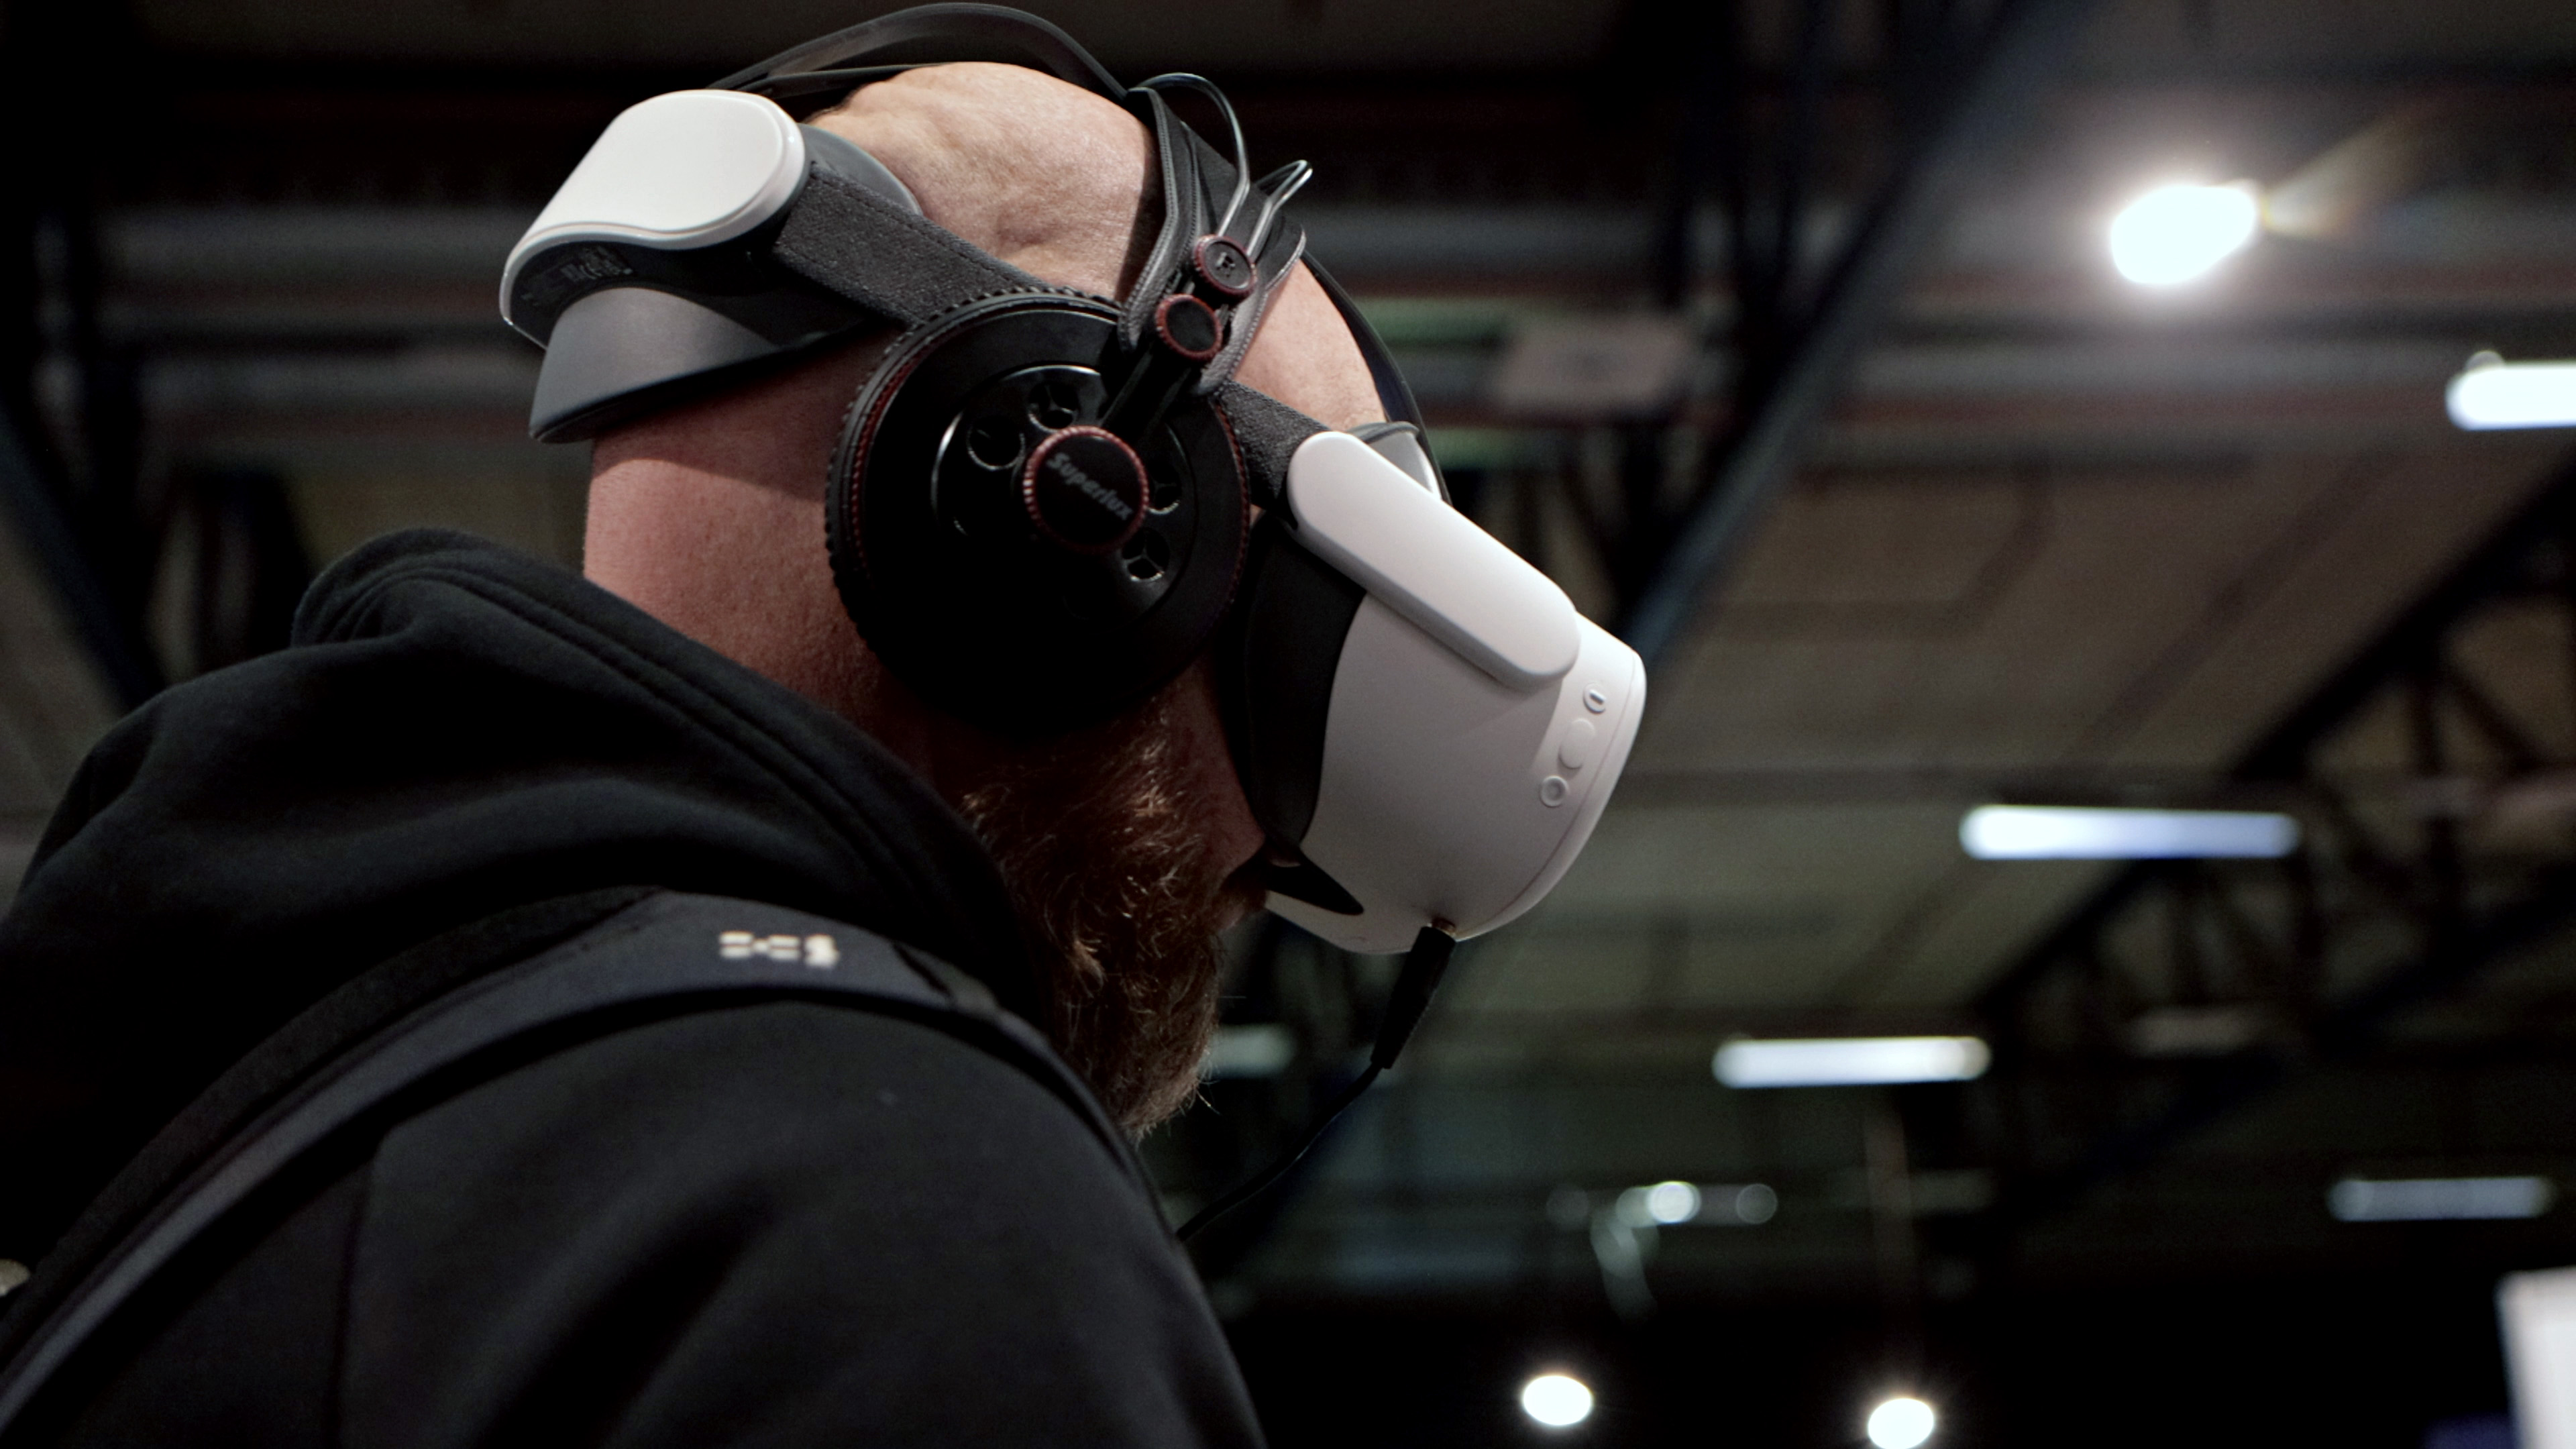 Mand ifrt VR-headset til konferencen Velfrdsteknologi anno 2023.